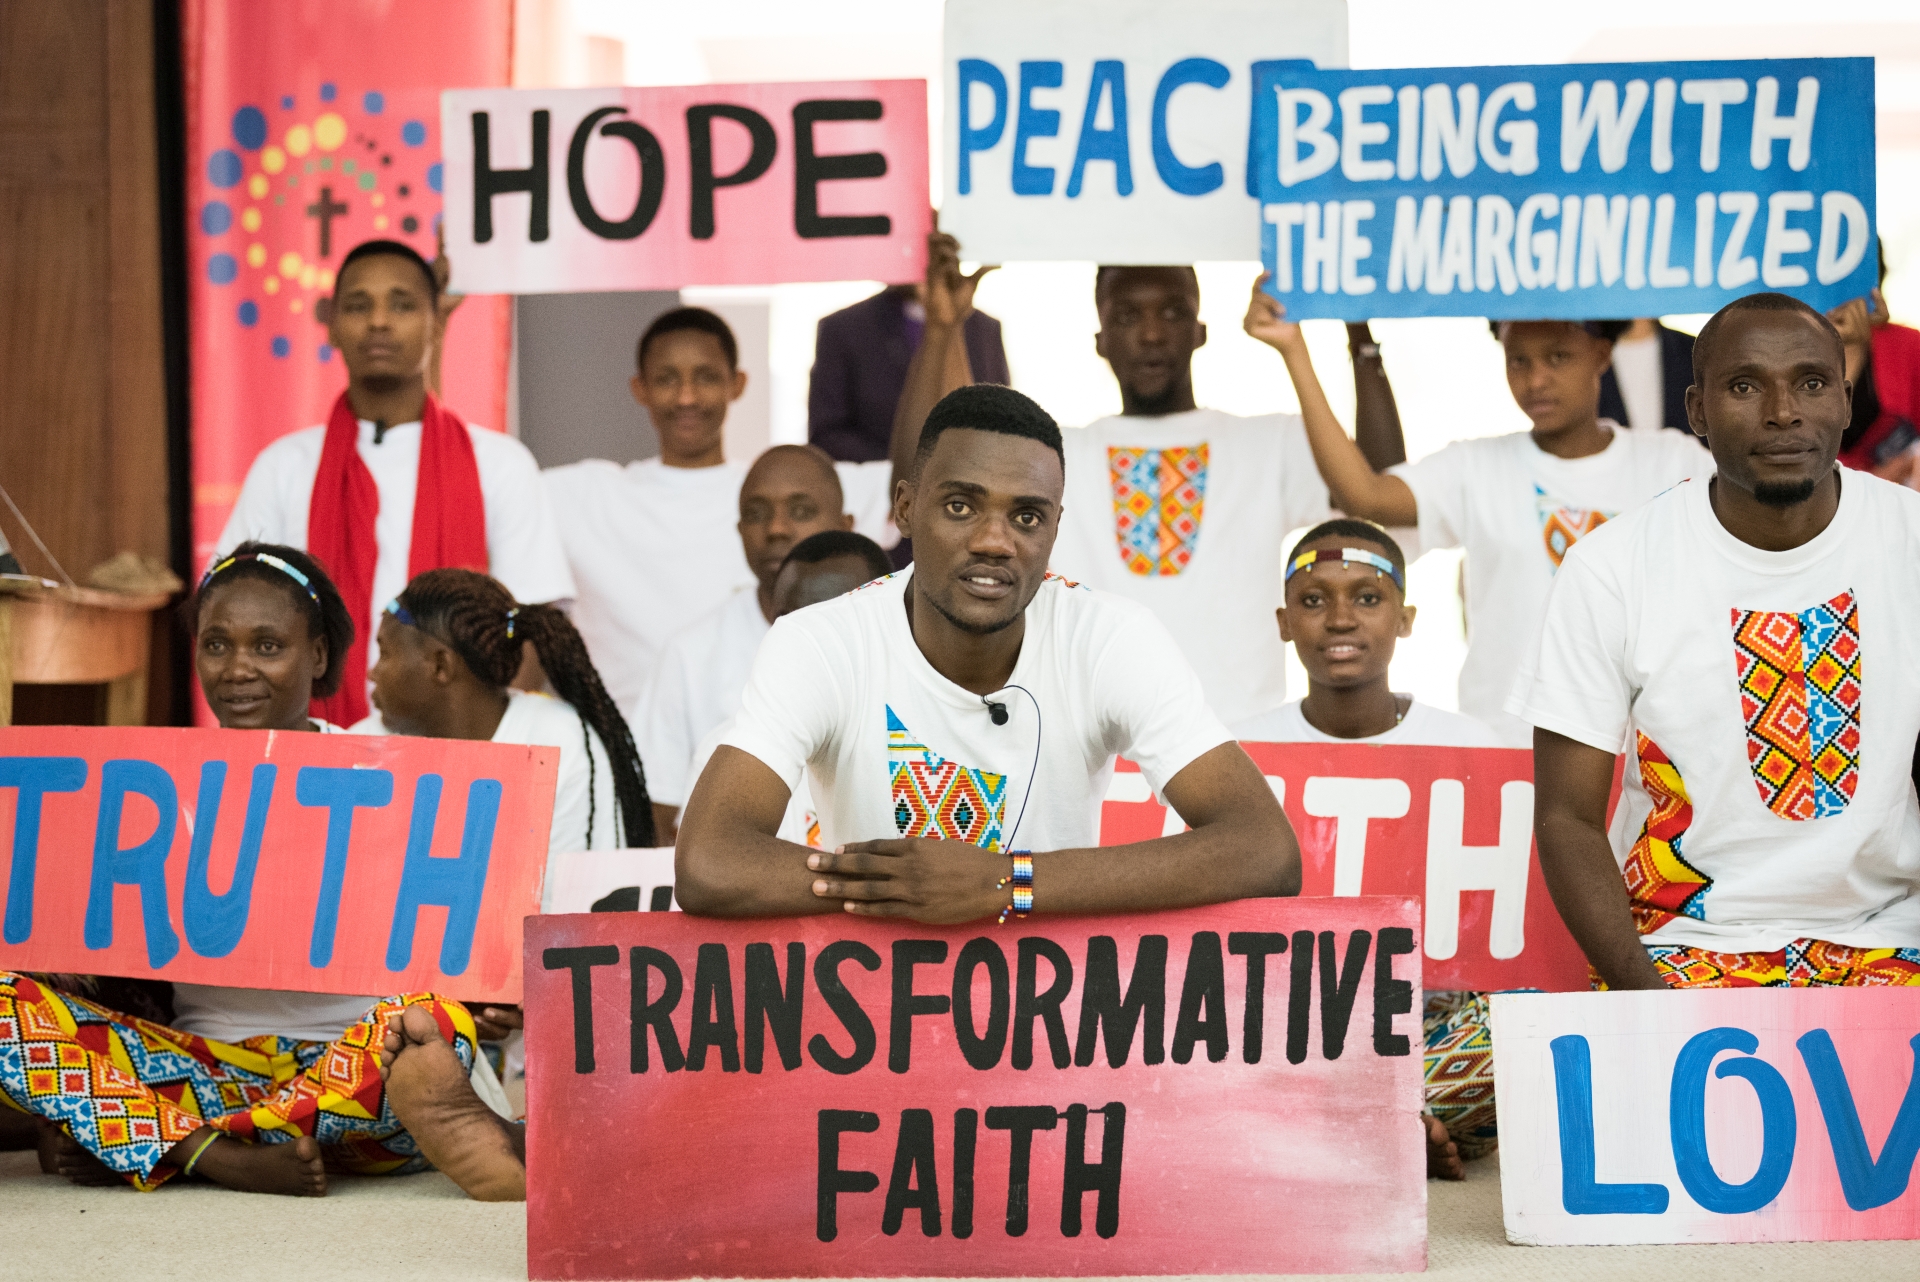 Nuoret pitävät kylttejä, joissa sanat: truht, love, hope, transformative faith, peace, being with the marginalized